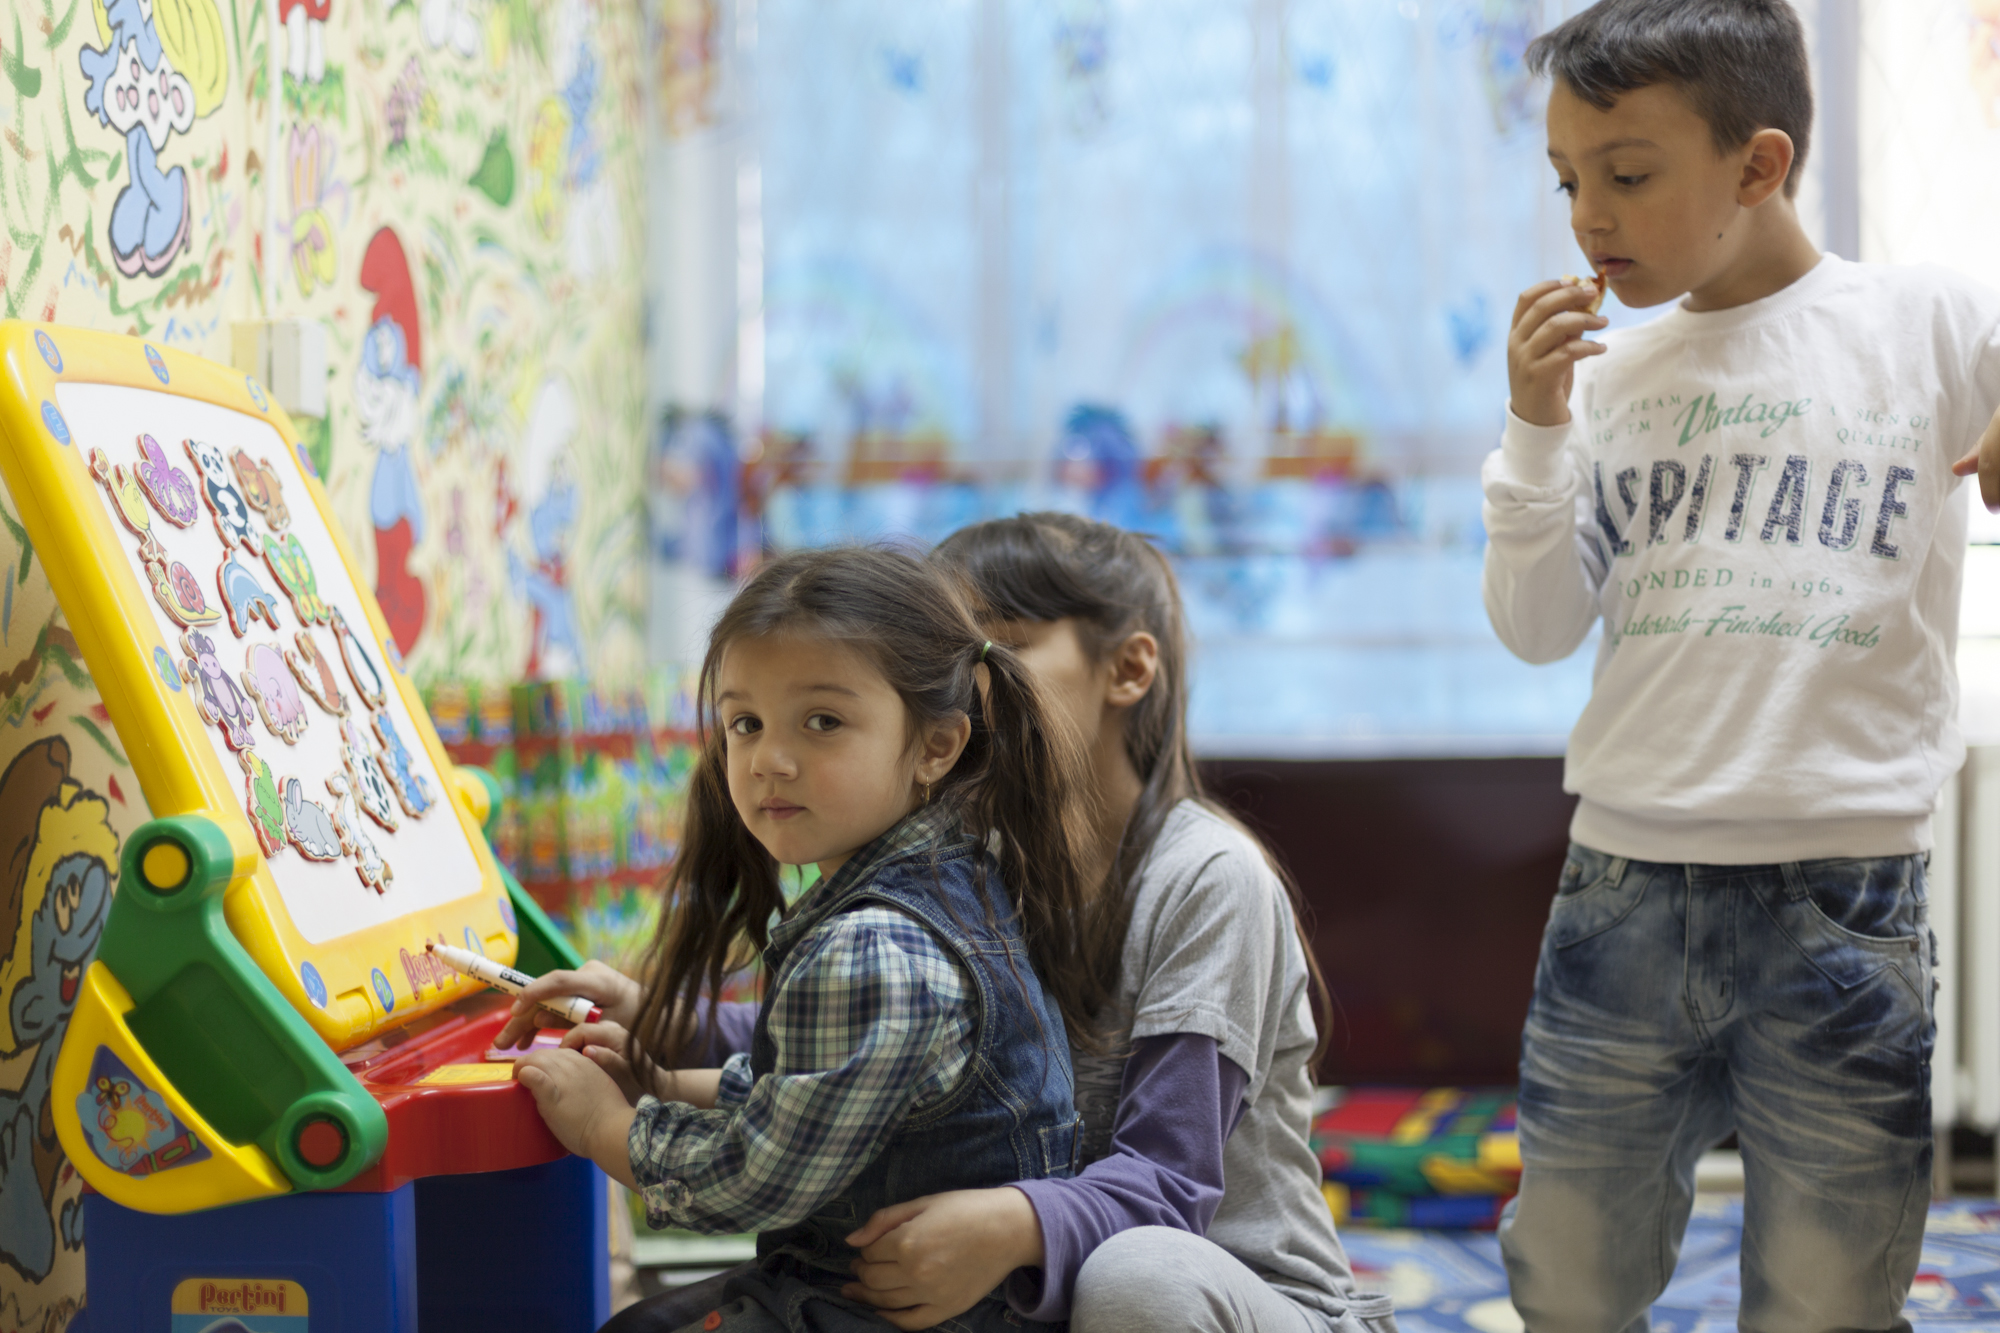 rganizacija Romanipen radi sa romskom populacijom i trudi da stvori prilike da se romska deca što više uključe u društvo. Jedan od njihovih projekata, koji je i nama bio zanimljiv, bila je Biblioteka igračaka u Kragujevcu. Tu biblioteku zamislili su kao mesto opremljeno najrazličitijim igračkama i edukativnim materijalima gde roditelji mogu da dovedu svoju decu da se druže i uživaju.